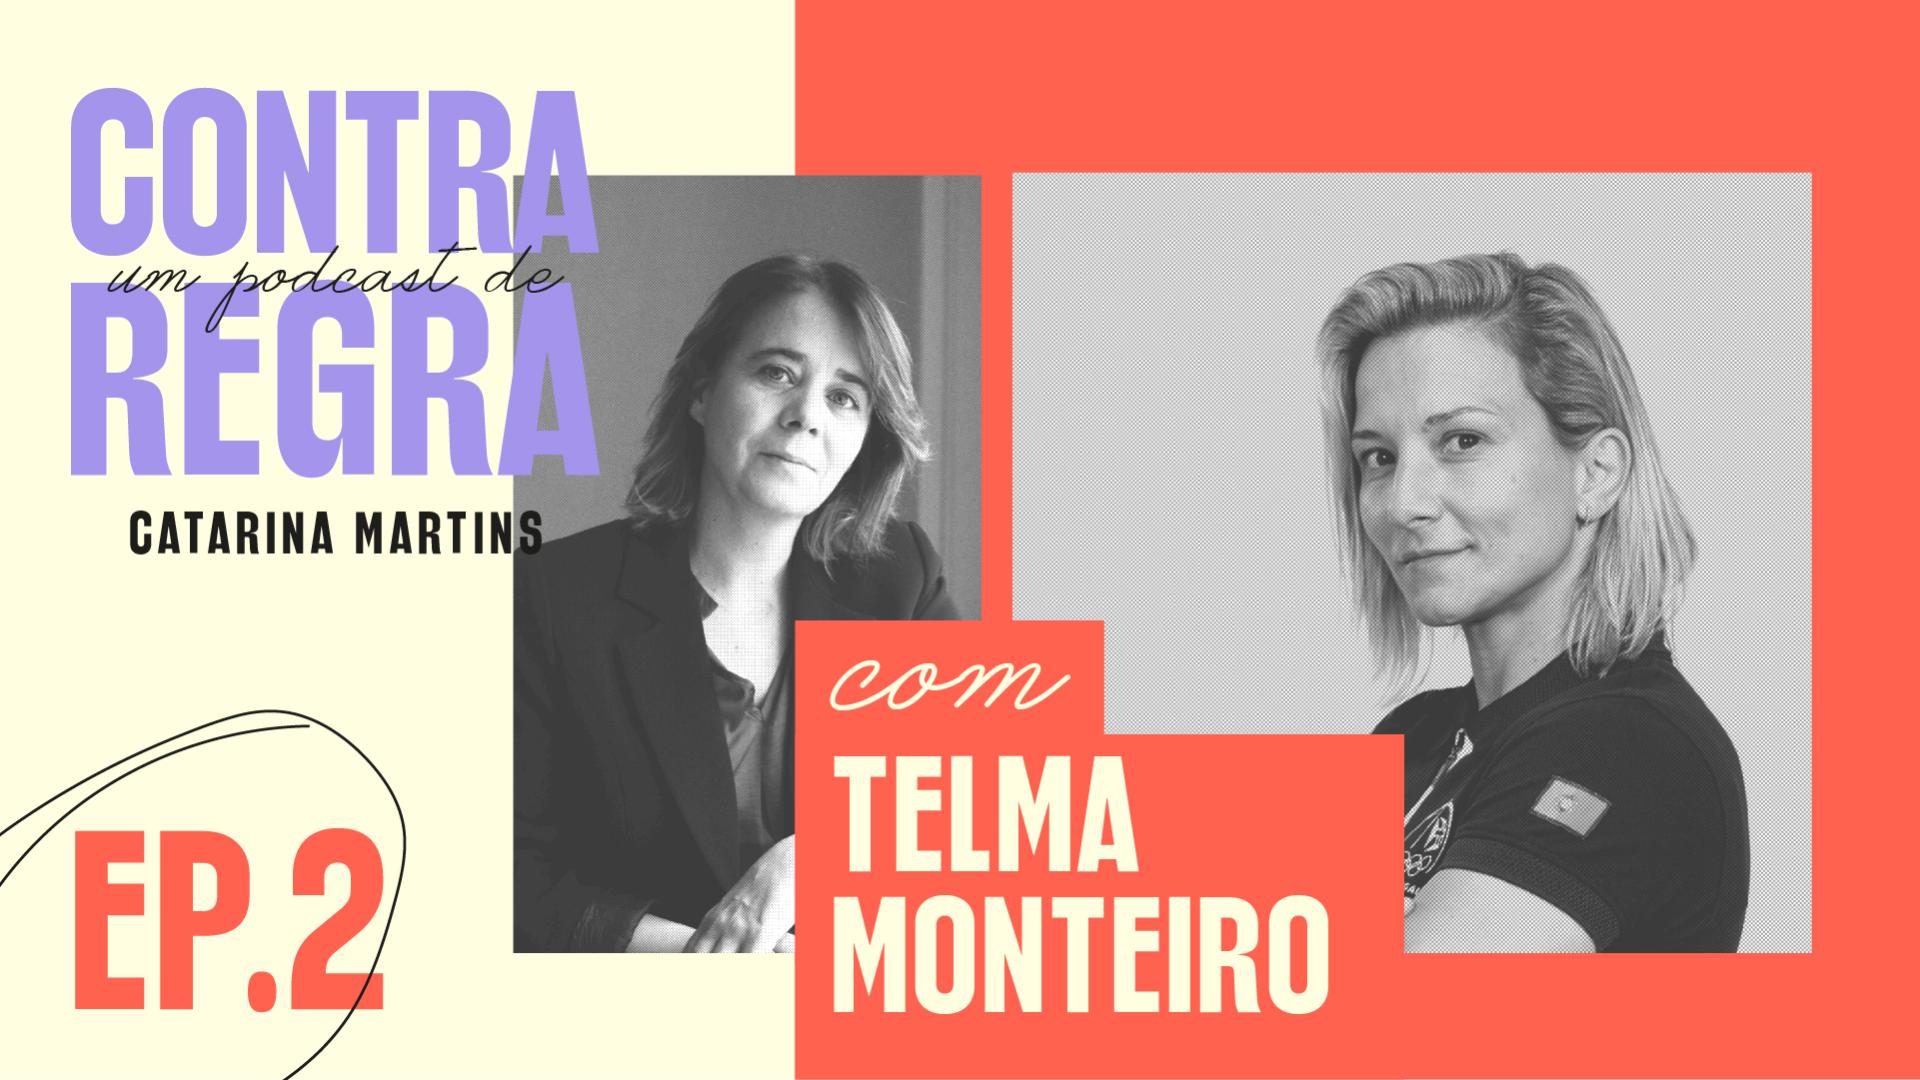 Catarina Martins e Telma Monteiro conversam sob o mote "ainda há combates que não vão ao tapete?"